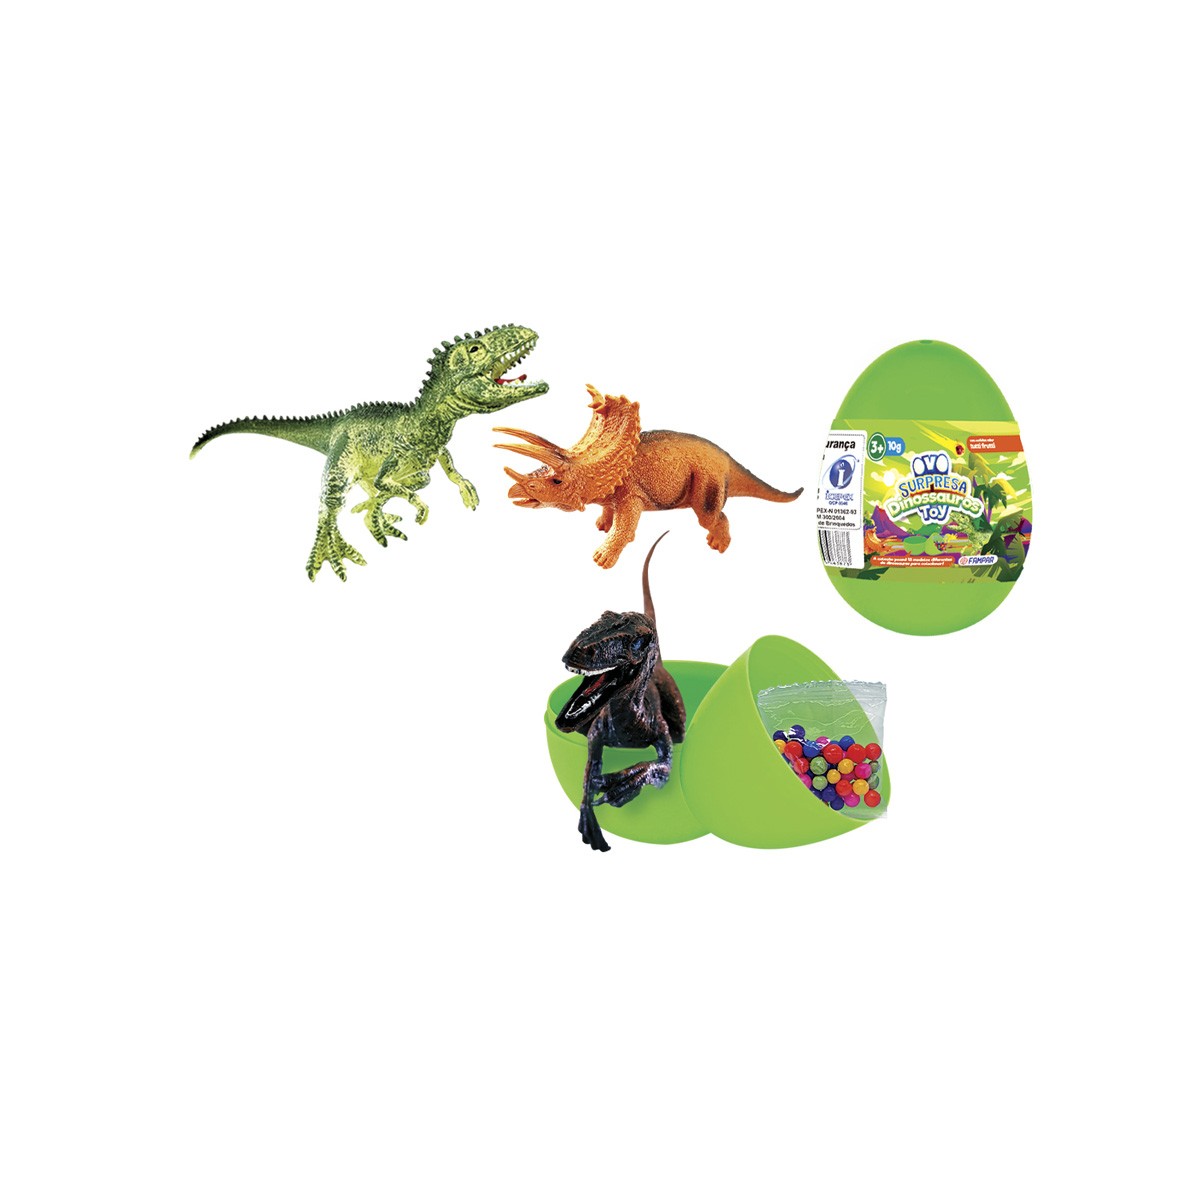 Ovo Surpresa com Dinossauro de Brinquedo Display com 18 unidades-21085002-92577